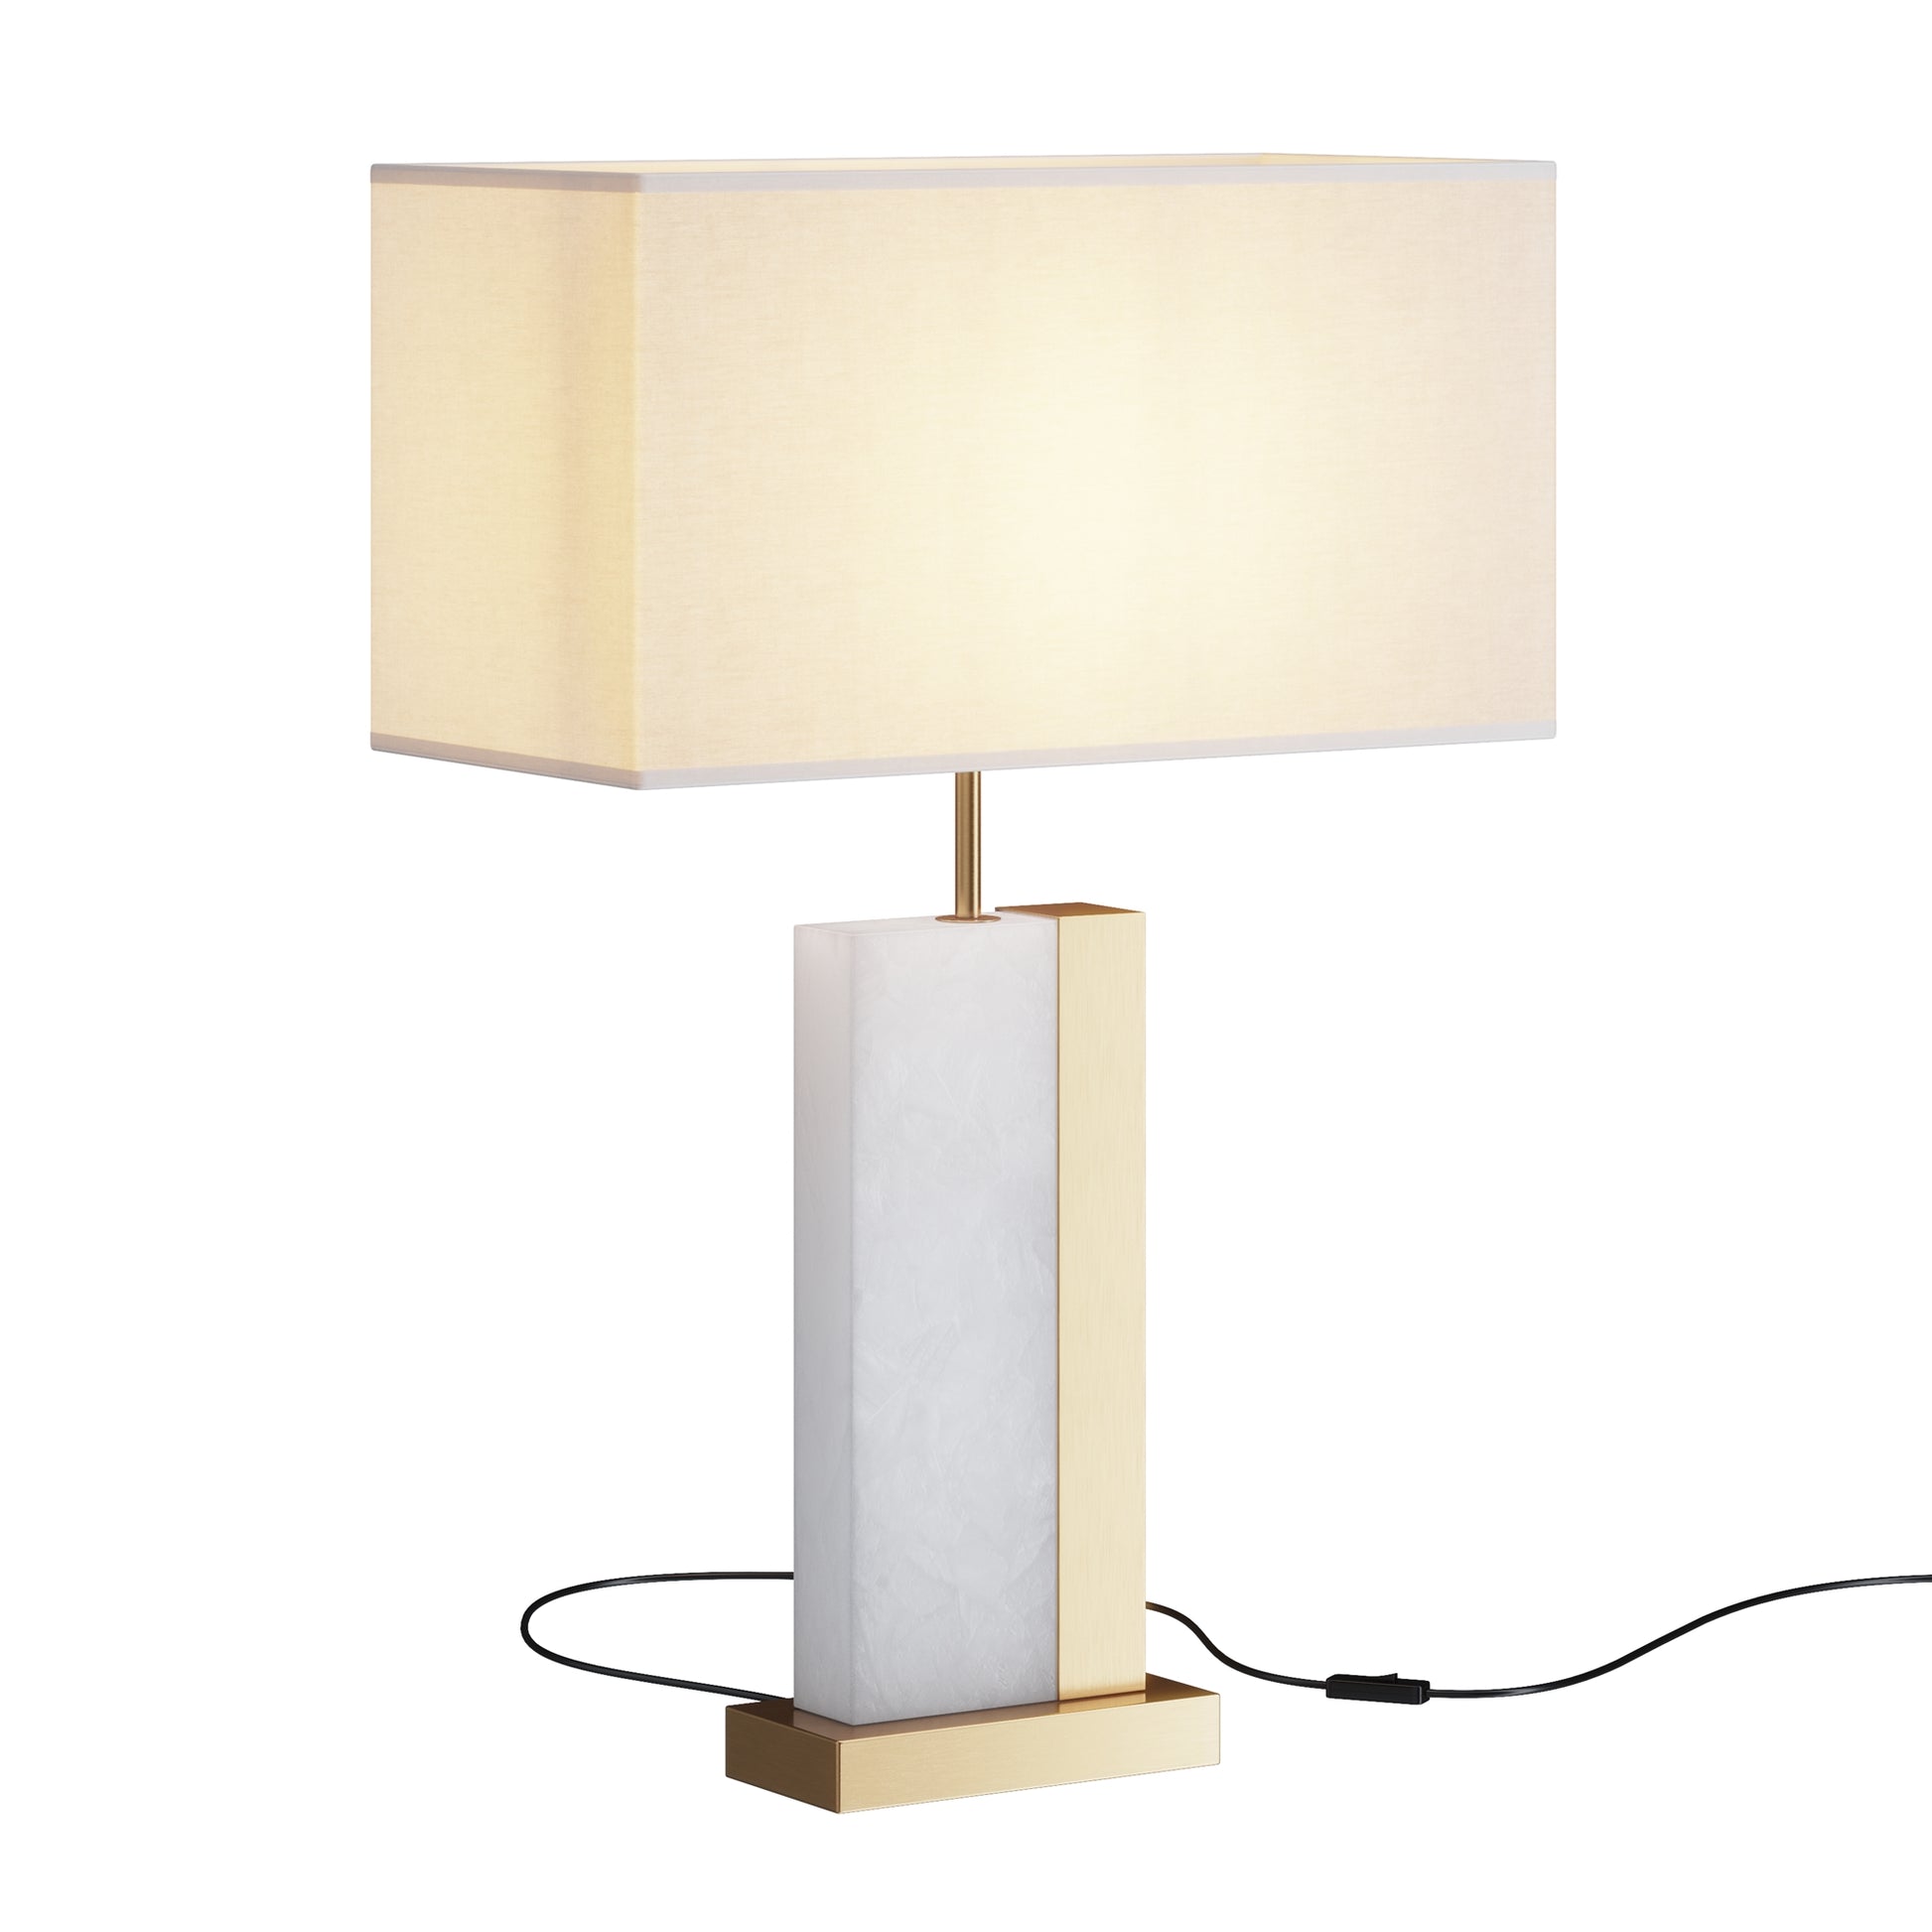 Une Lampe Blanche au style Ancien, design, classique et intemporelle à la fois.